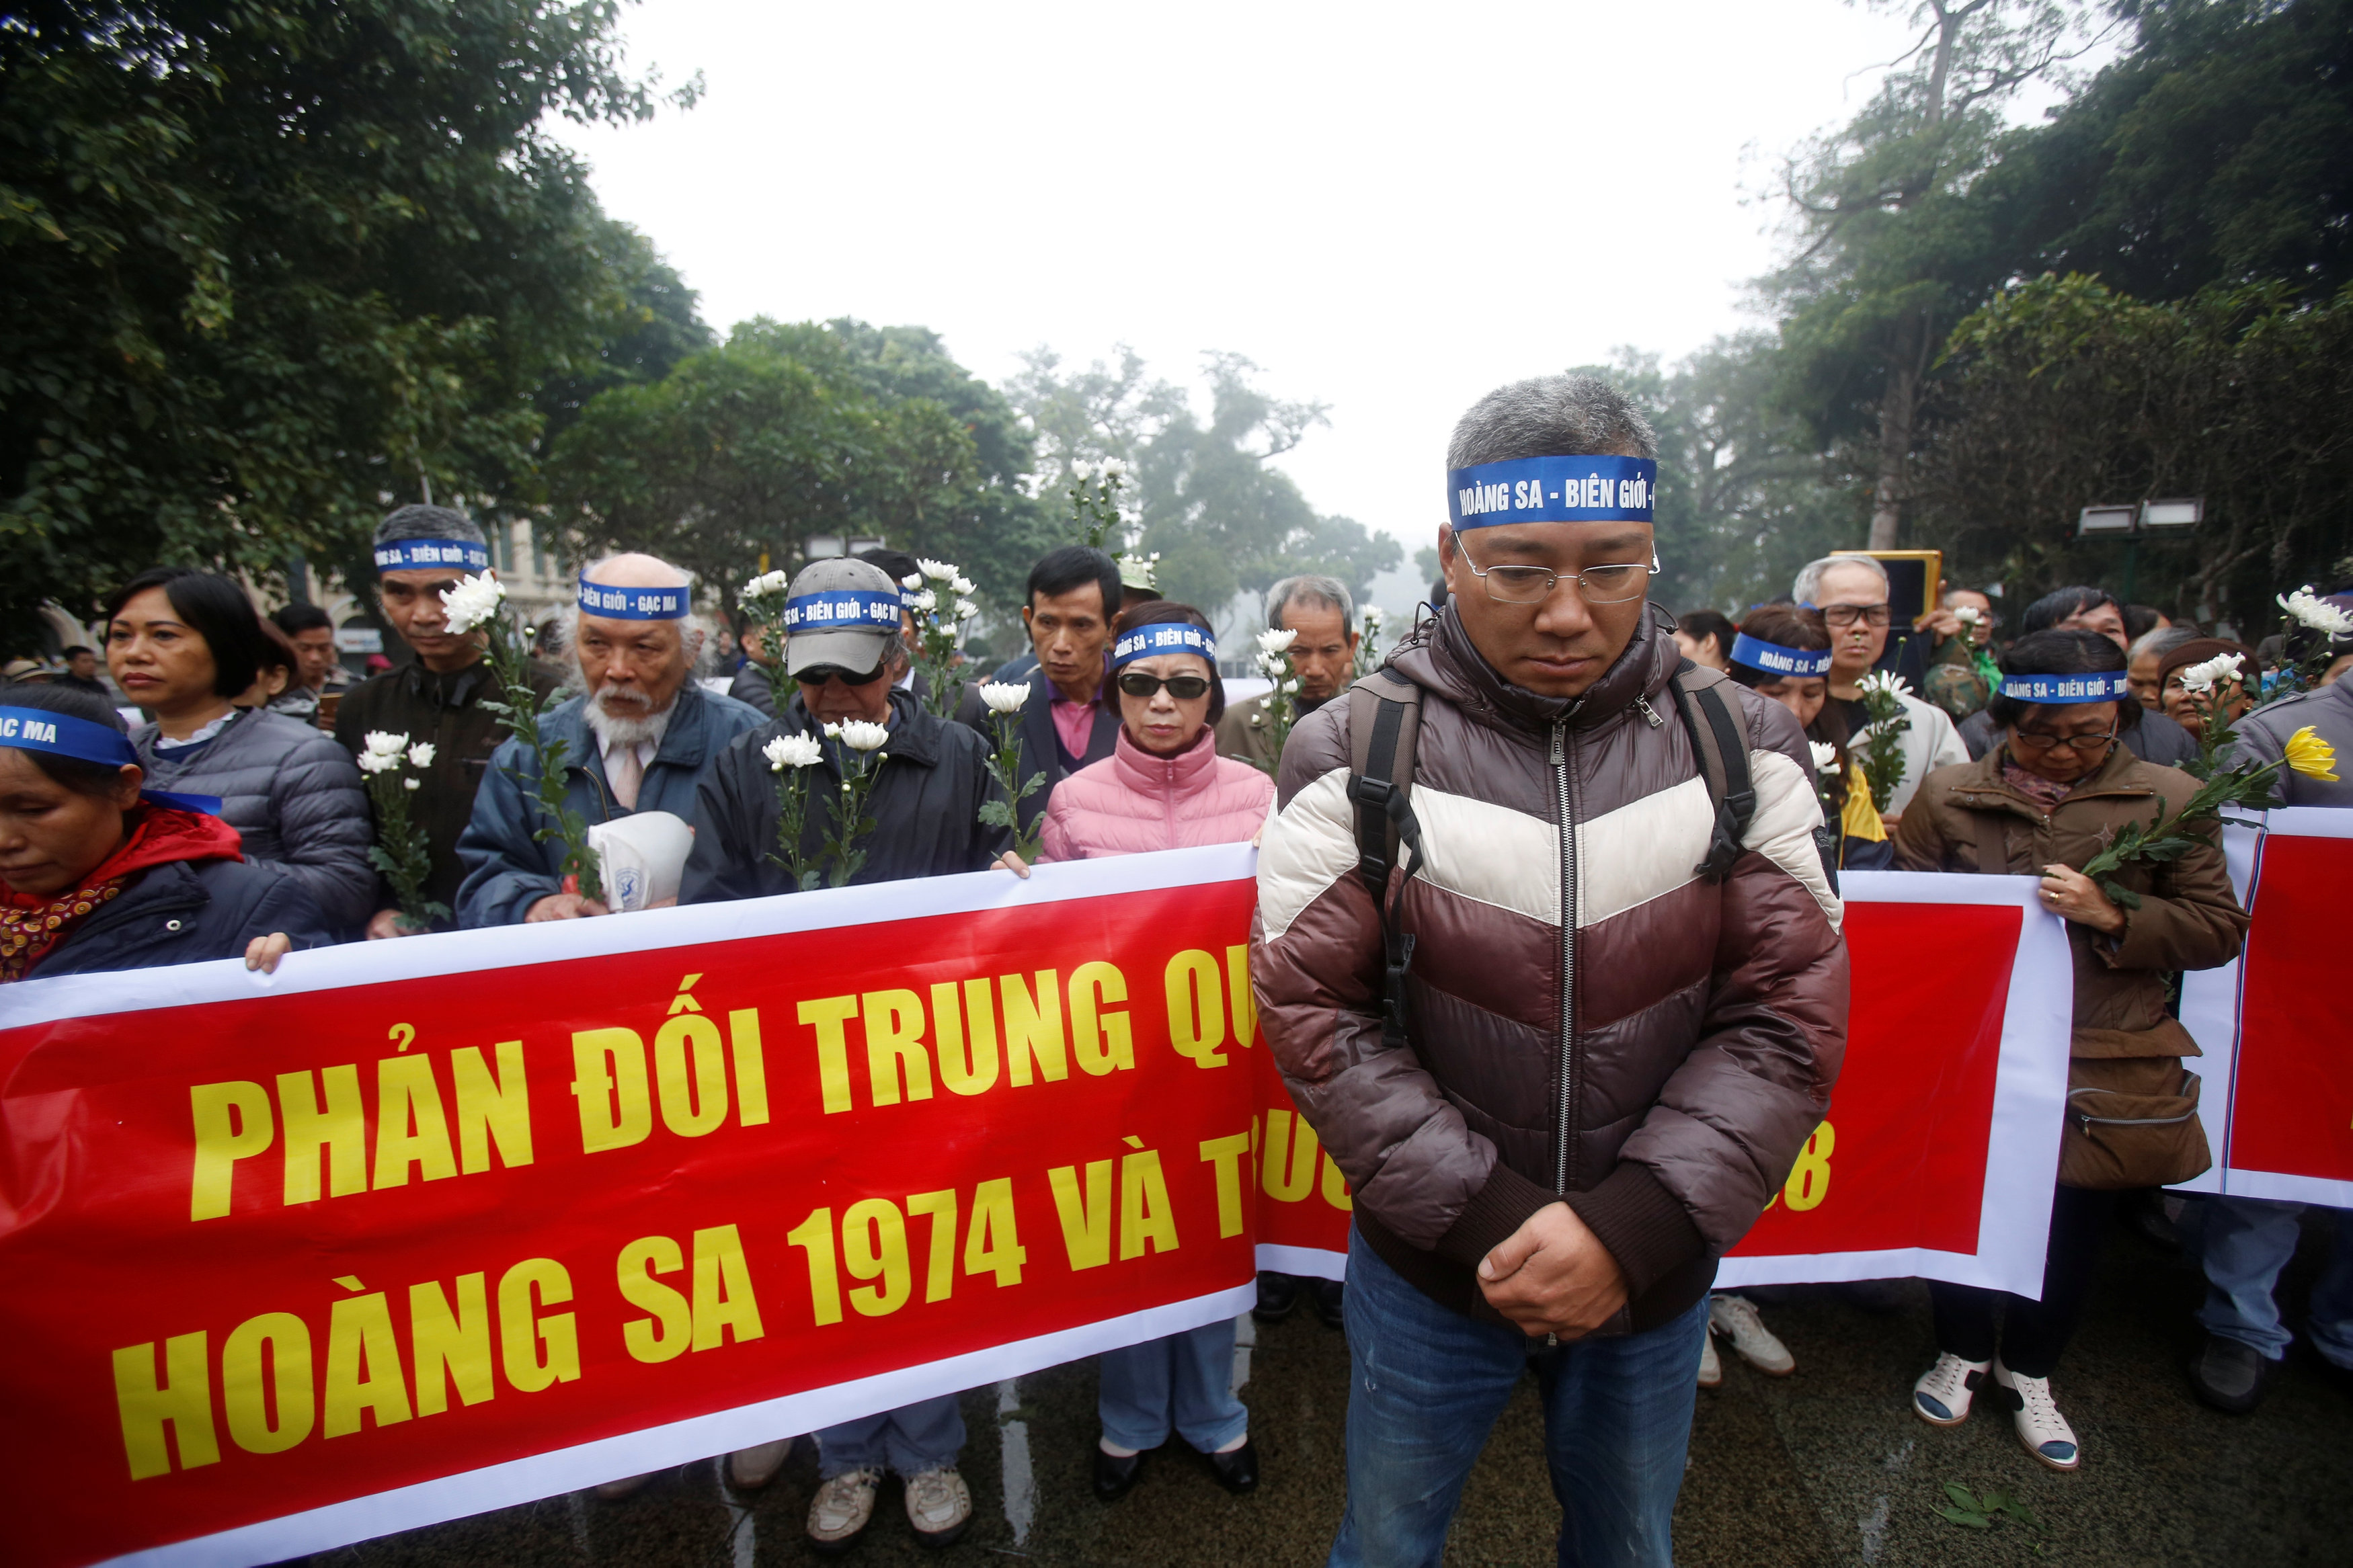 تظاهر فيتناميون بهانوى لإحياء ذكرى سنوية بشأن نزاع بحر الصين الجنوبى